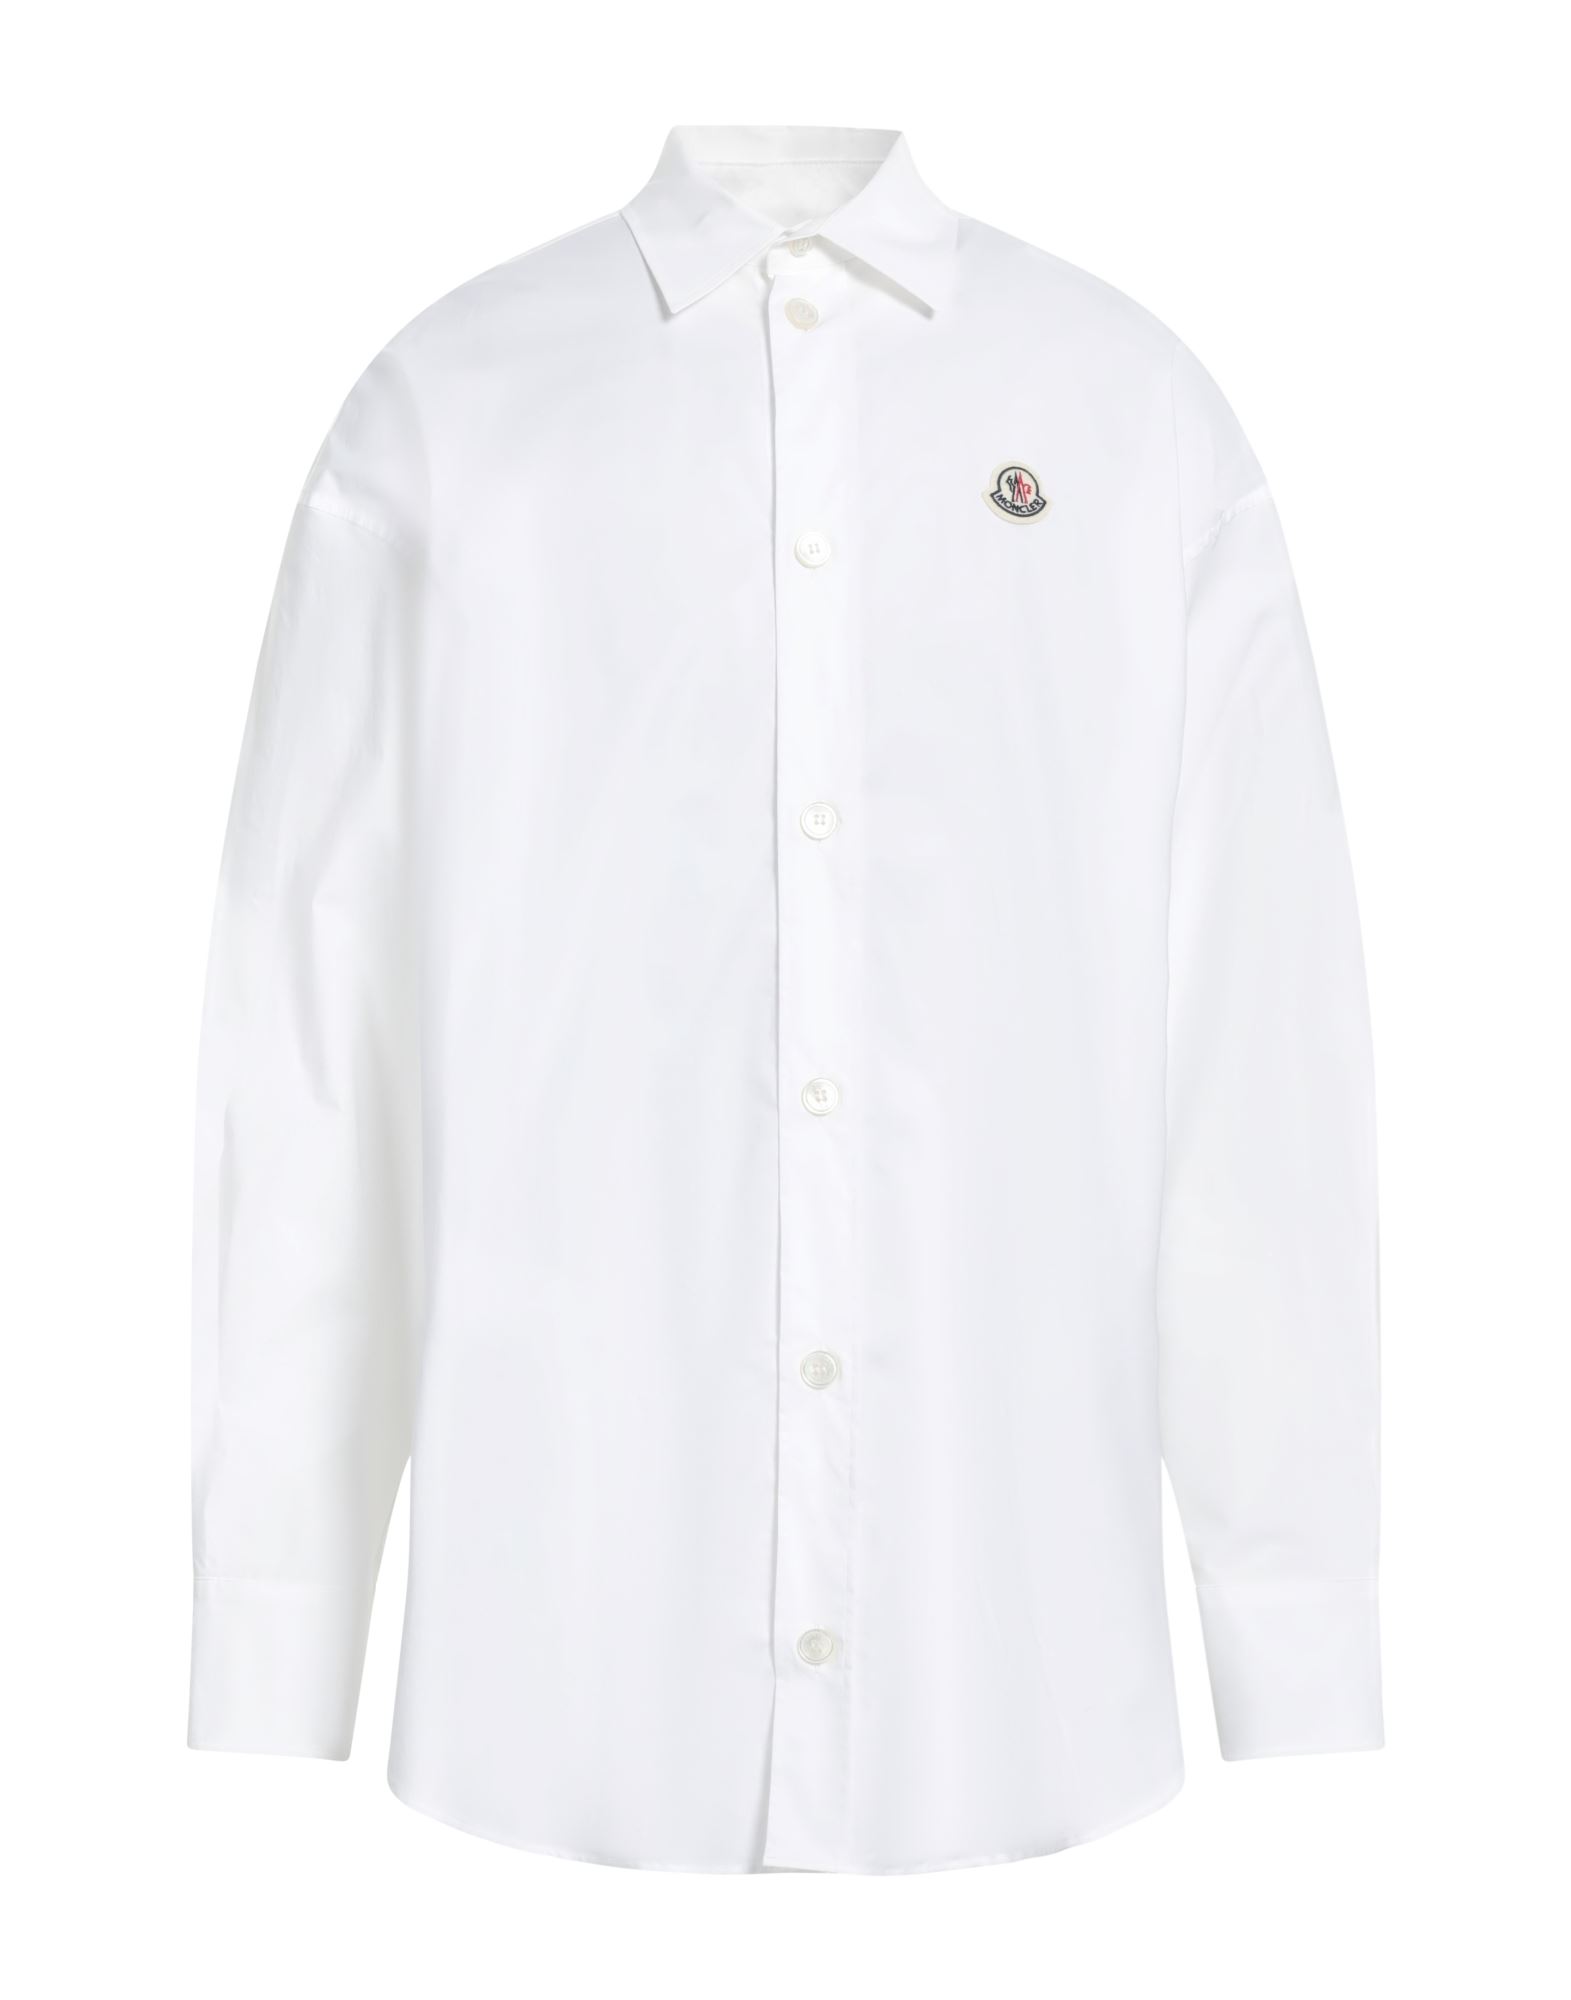 モンクレール(MONCLER) メンズシャツ・ワイシャツ | 通販・人気ランキング - 価格.com